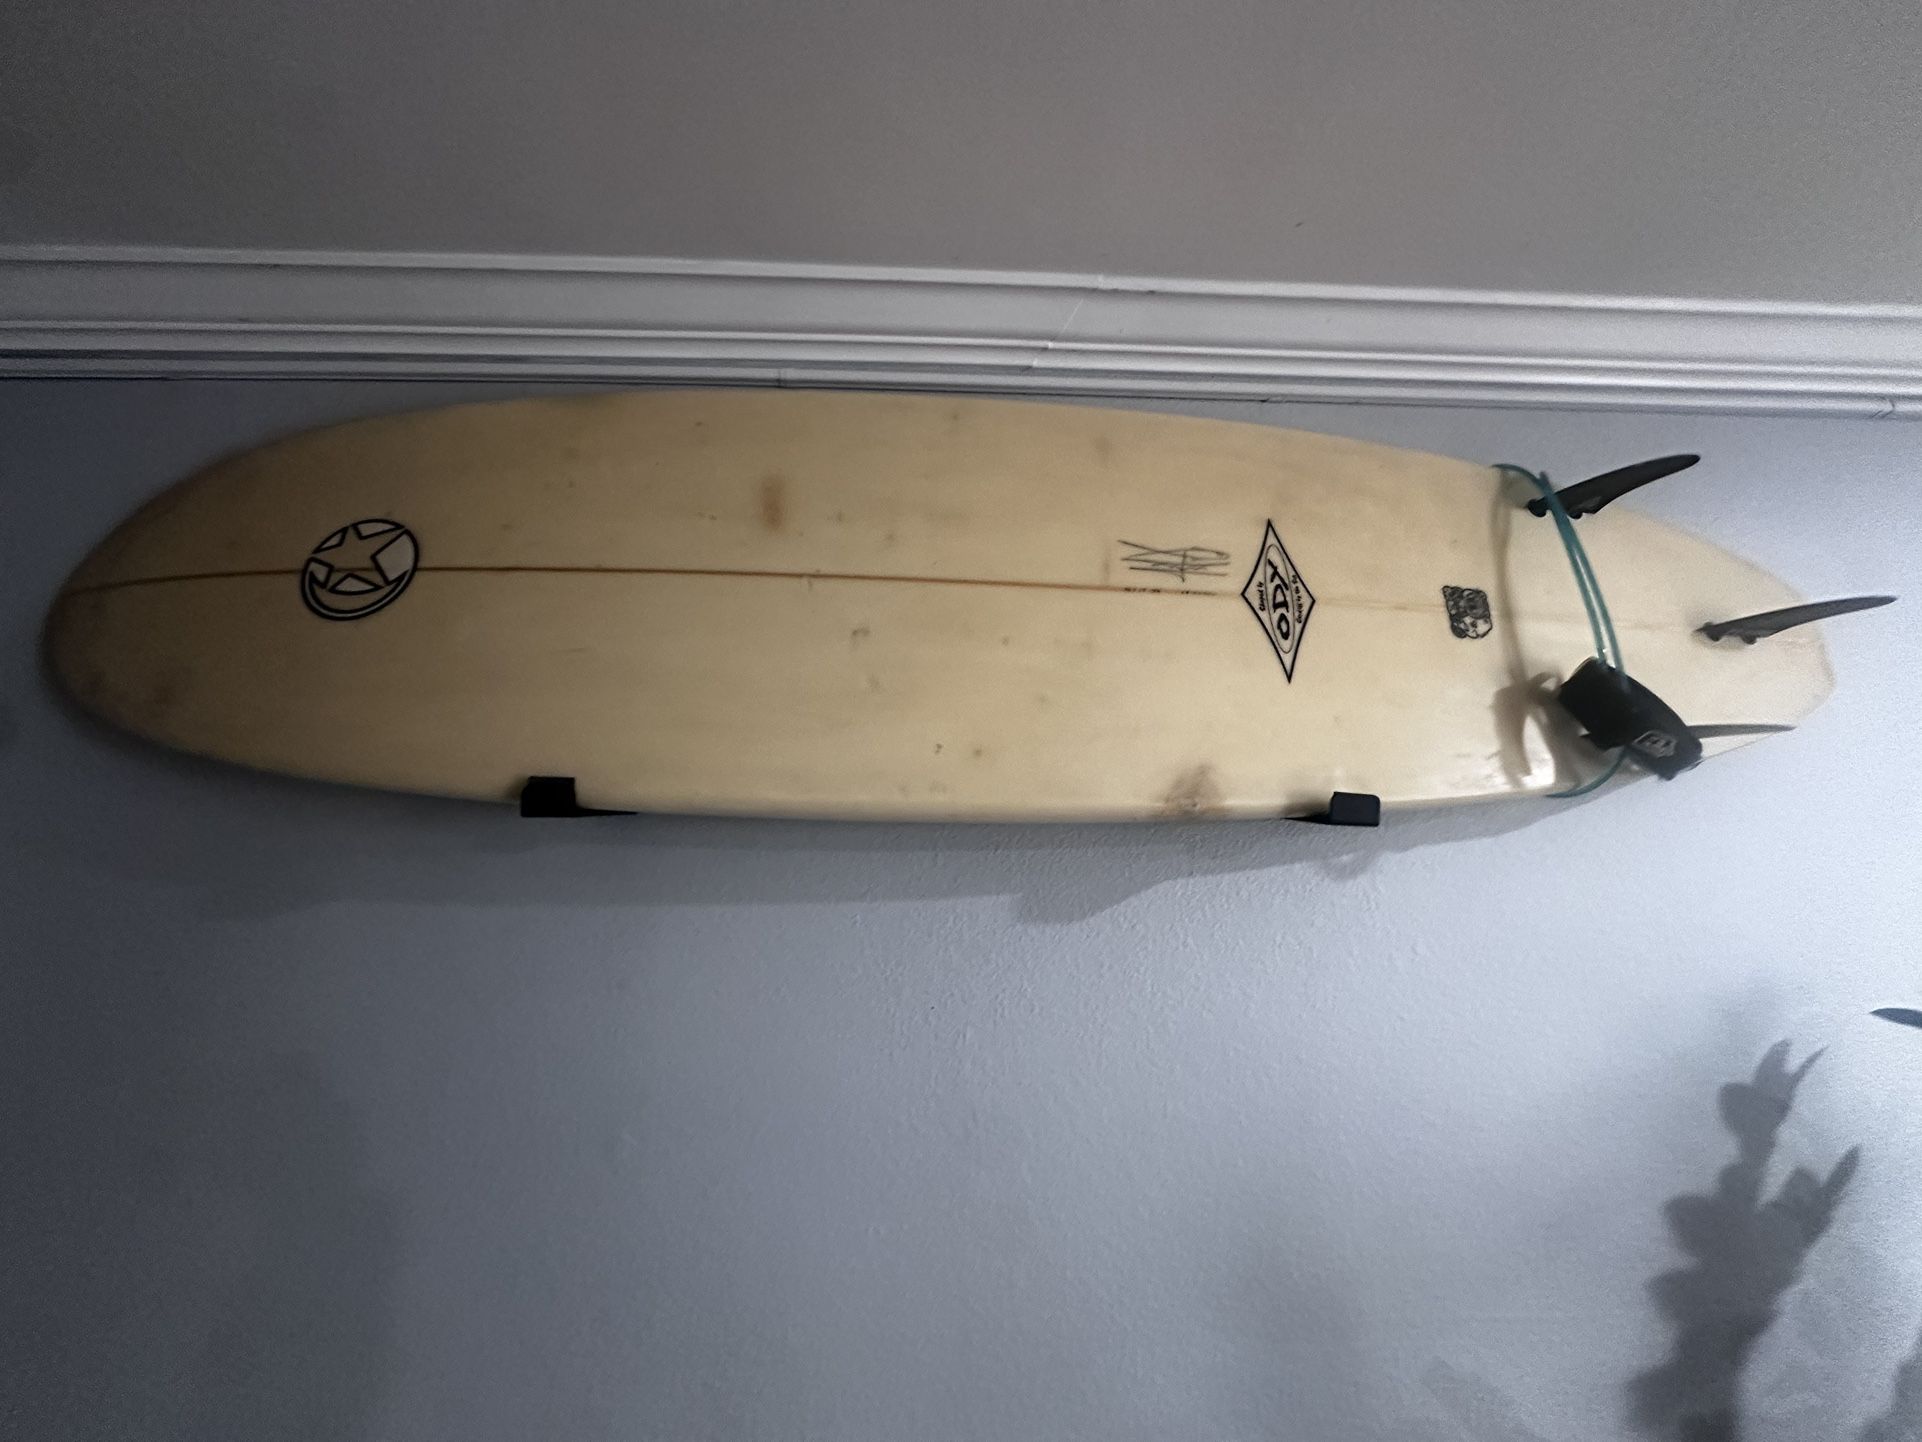 6ft Surfboard 